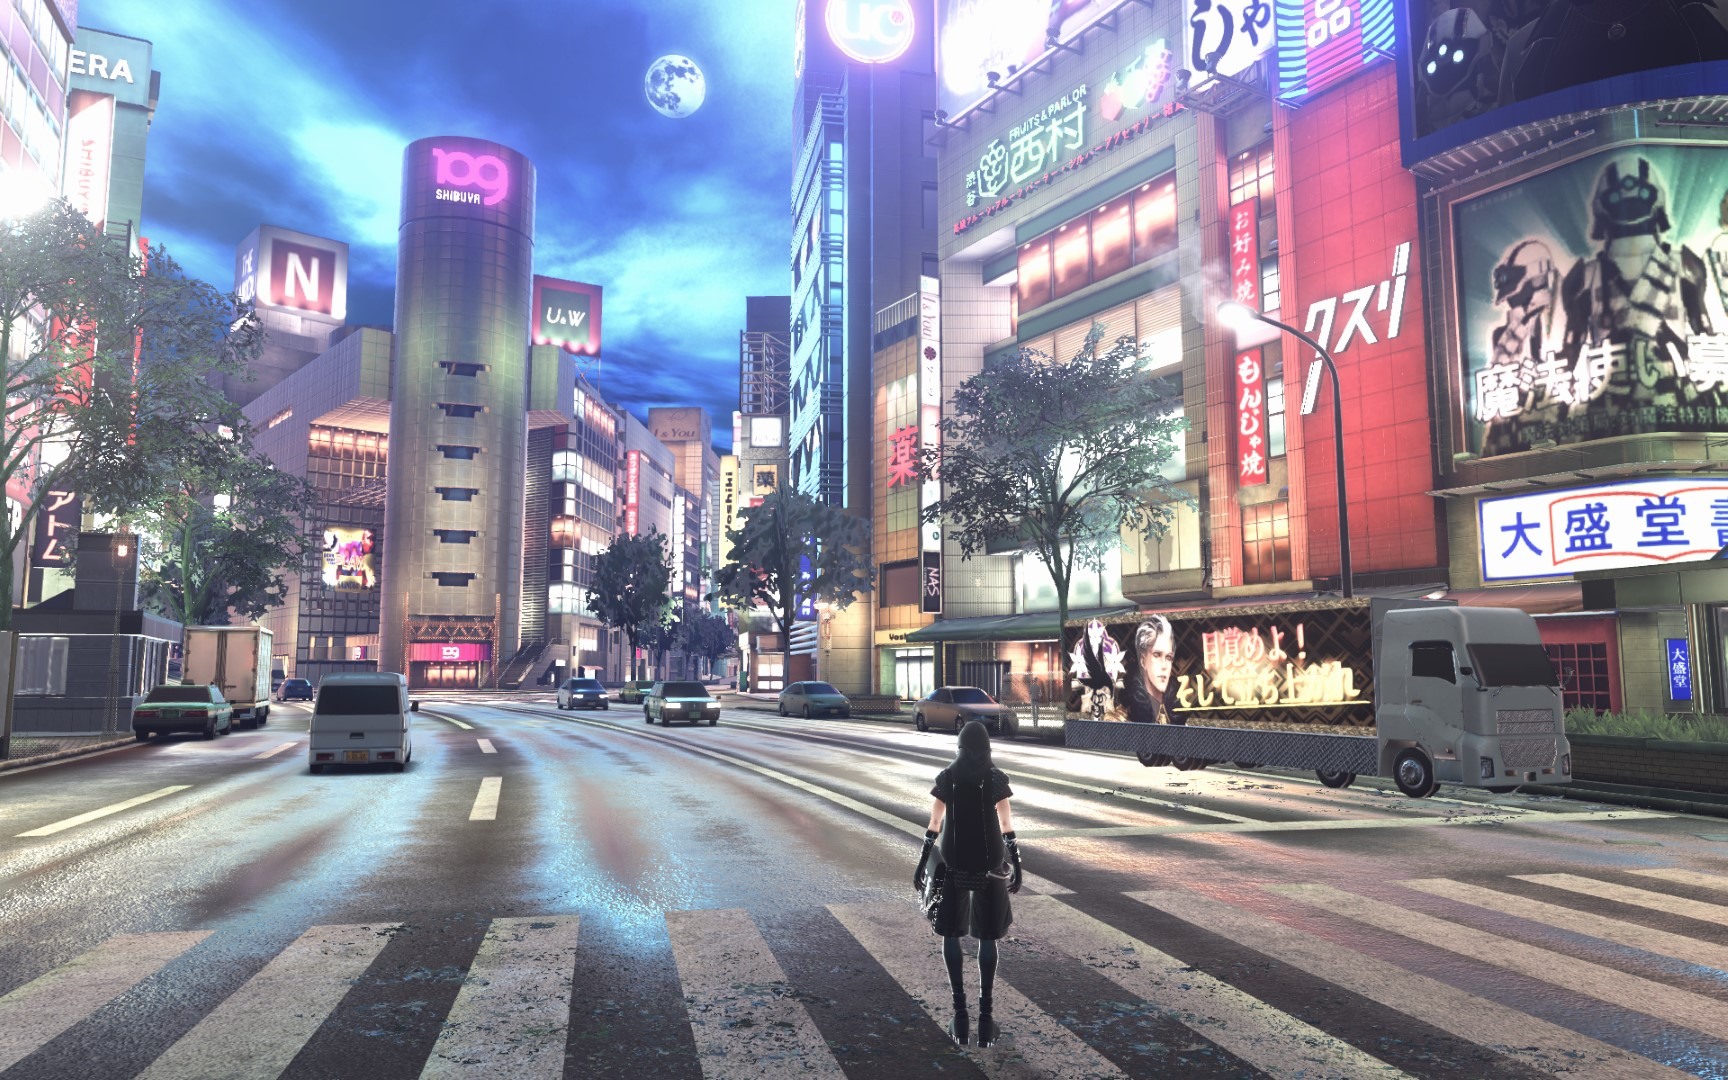 以东京涩谷为舞台的魔法动作 RPG《雷纳提斯》确定推出繁体中文版